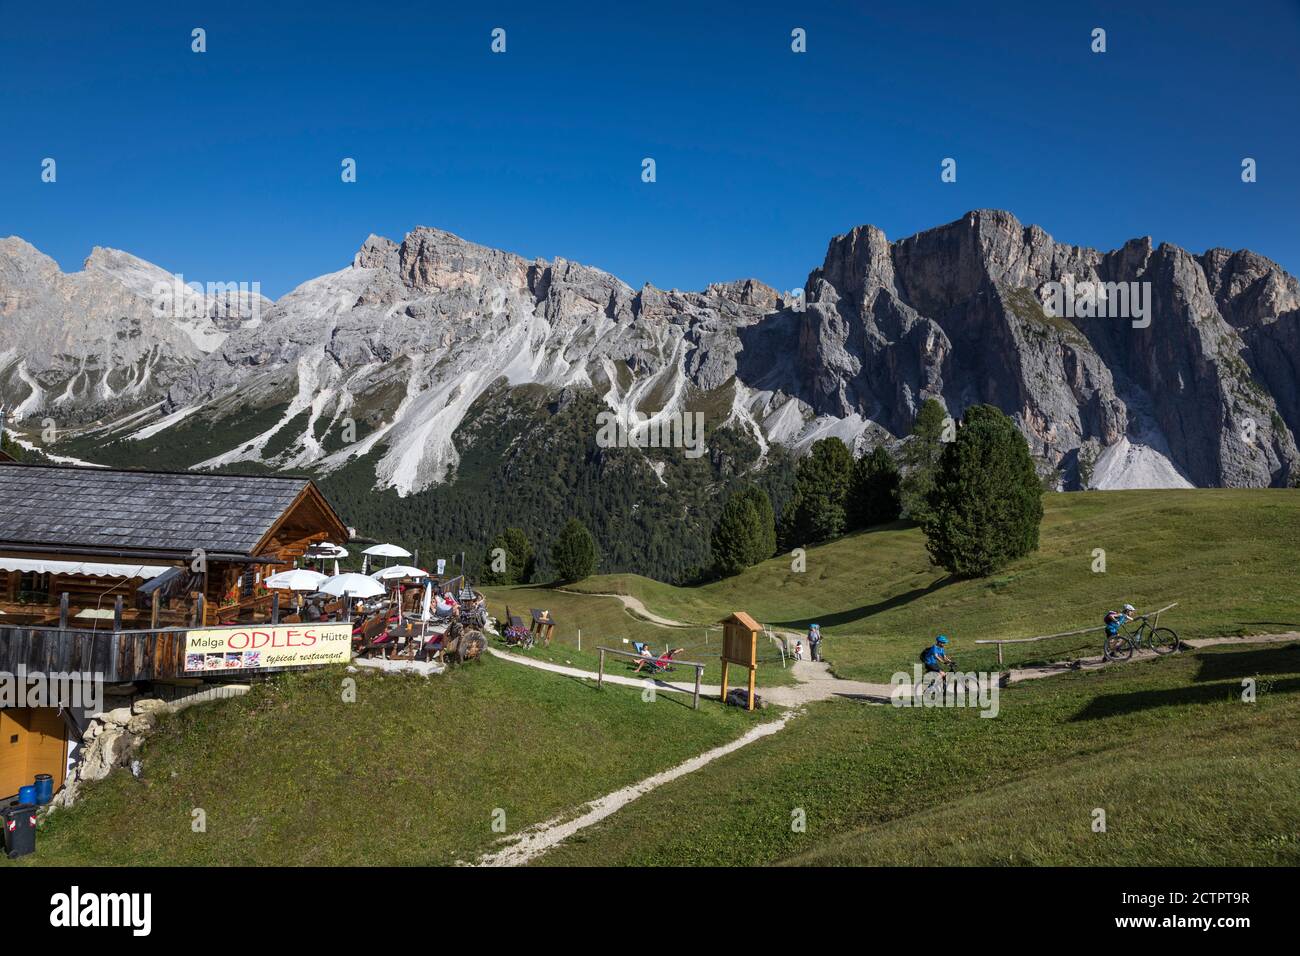 Los ciclistas abandonan un restaurante de montaña y se encuentran en una pista de montaña con vistas espectaculares de las montañas Dolomitas alrededor de Val Gardena, Italia. Foto de stock